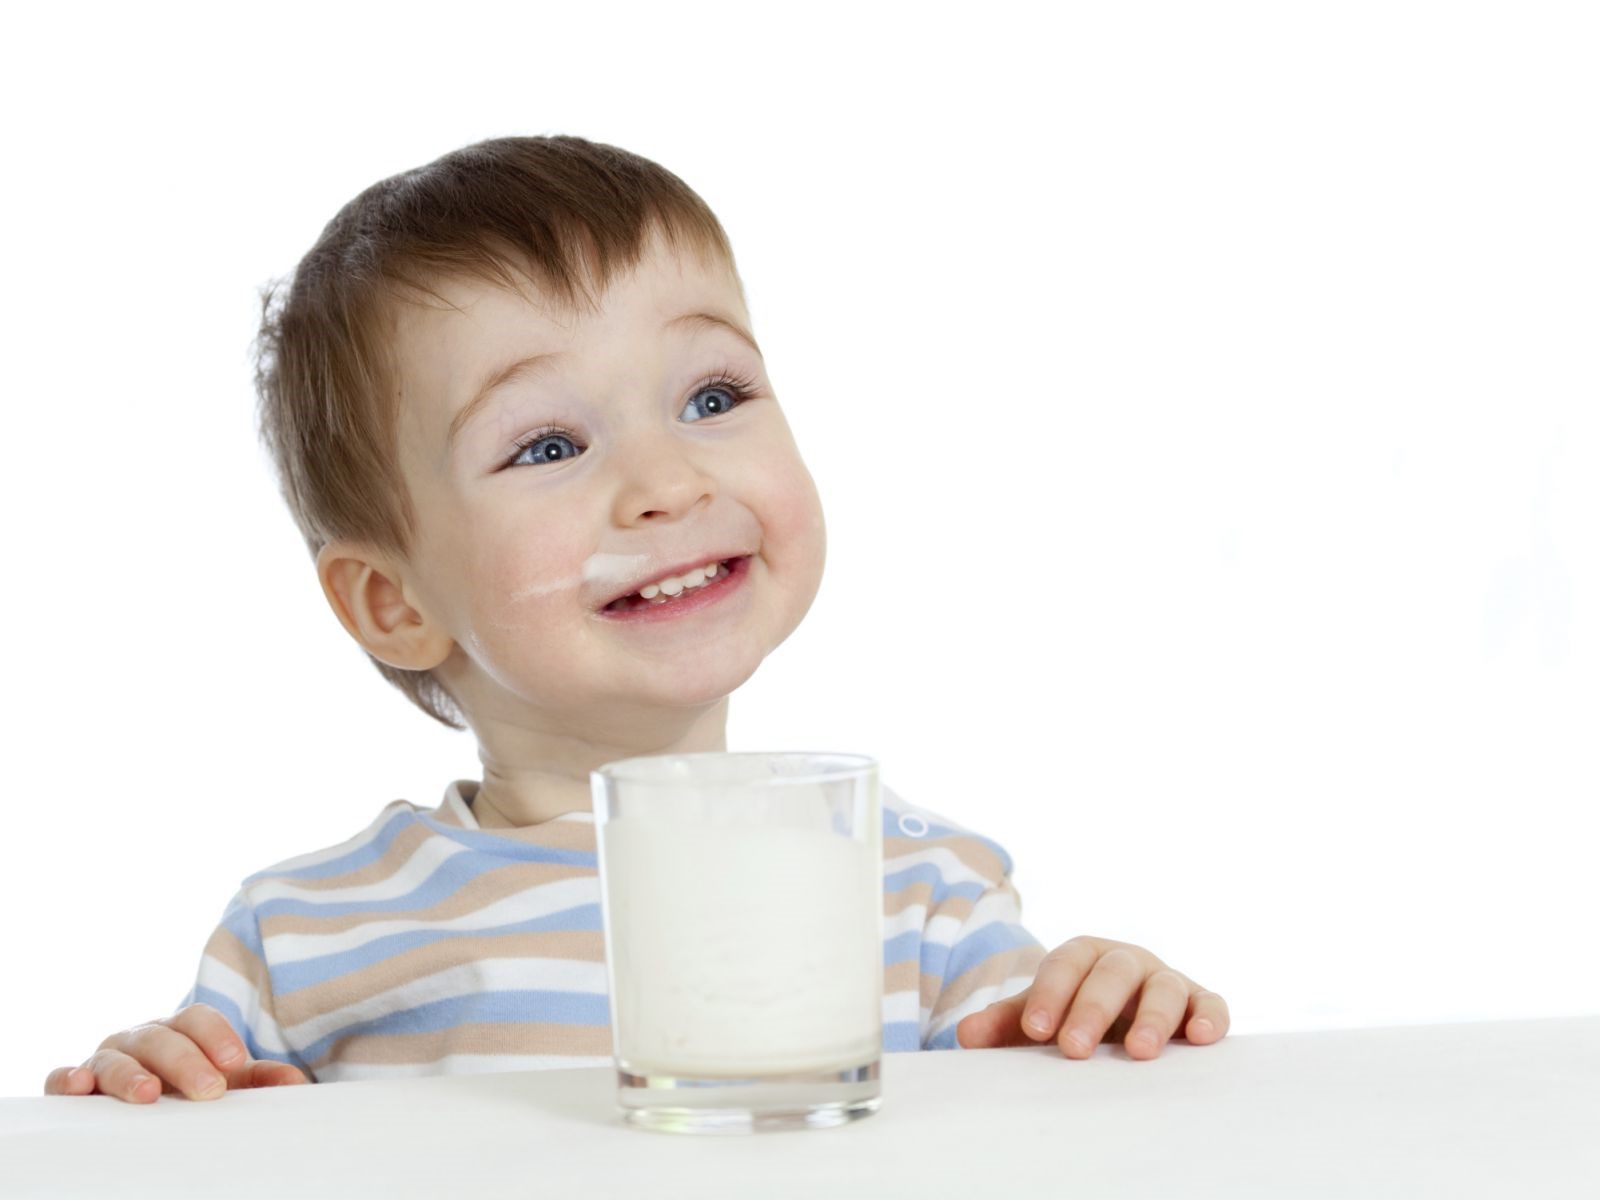  Sữa dê dễ hấp thu, chuyển hóa năng lượng giúp phòng tránh nguy cơ suy dinh dưỡng ở trẻ 2 tuổi hiệu quả